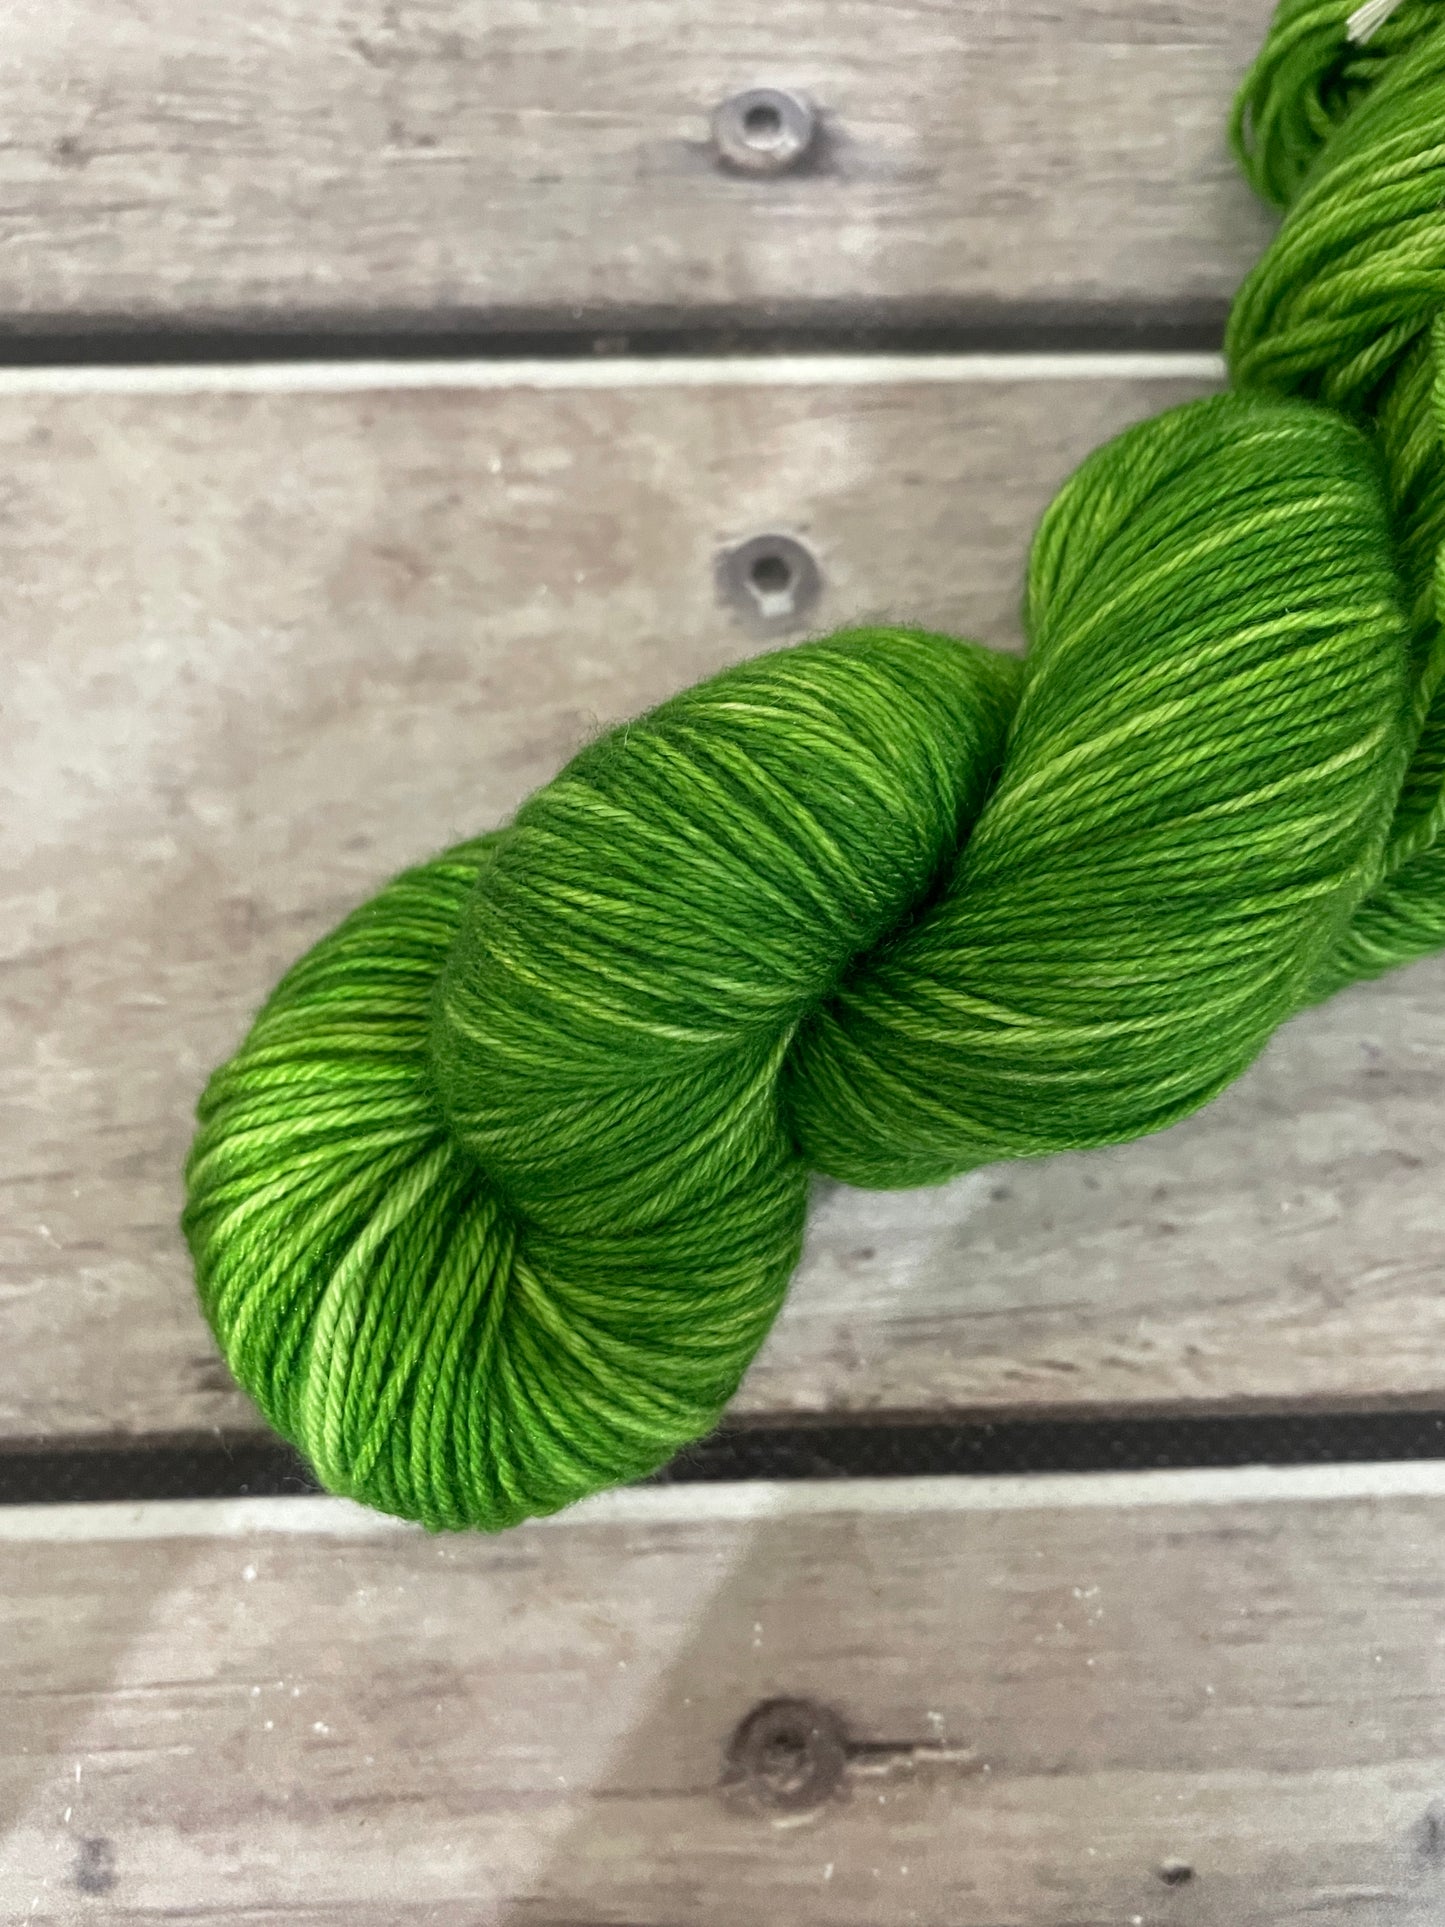 Frog Green - sock yarn in merino and nylon - Darjeeling